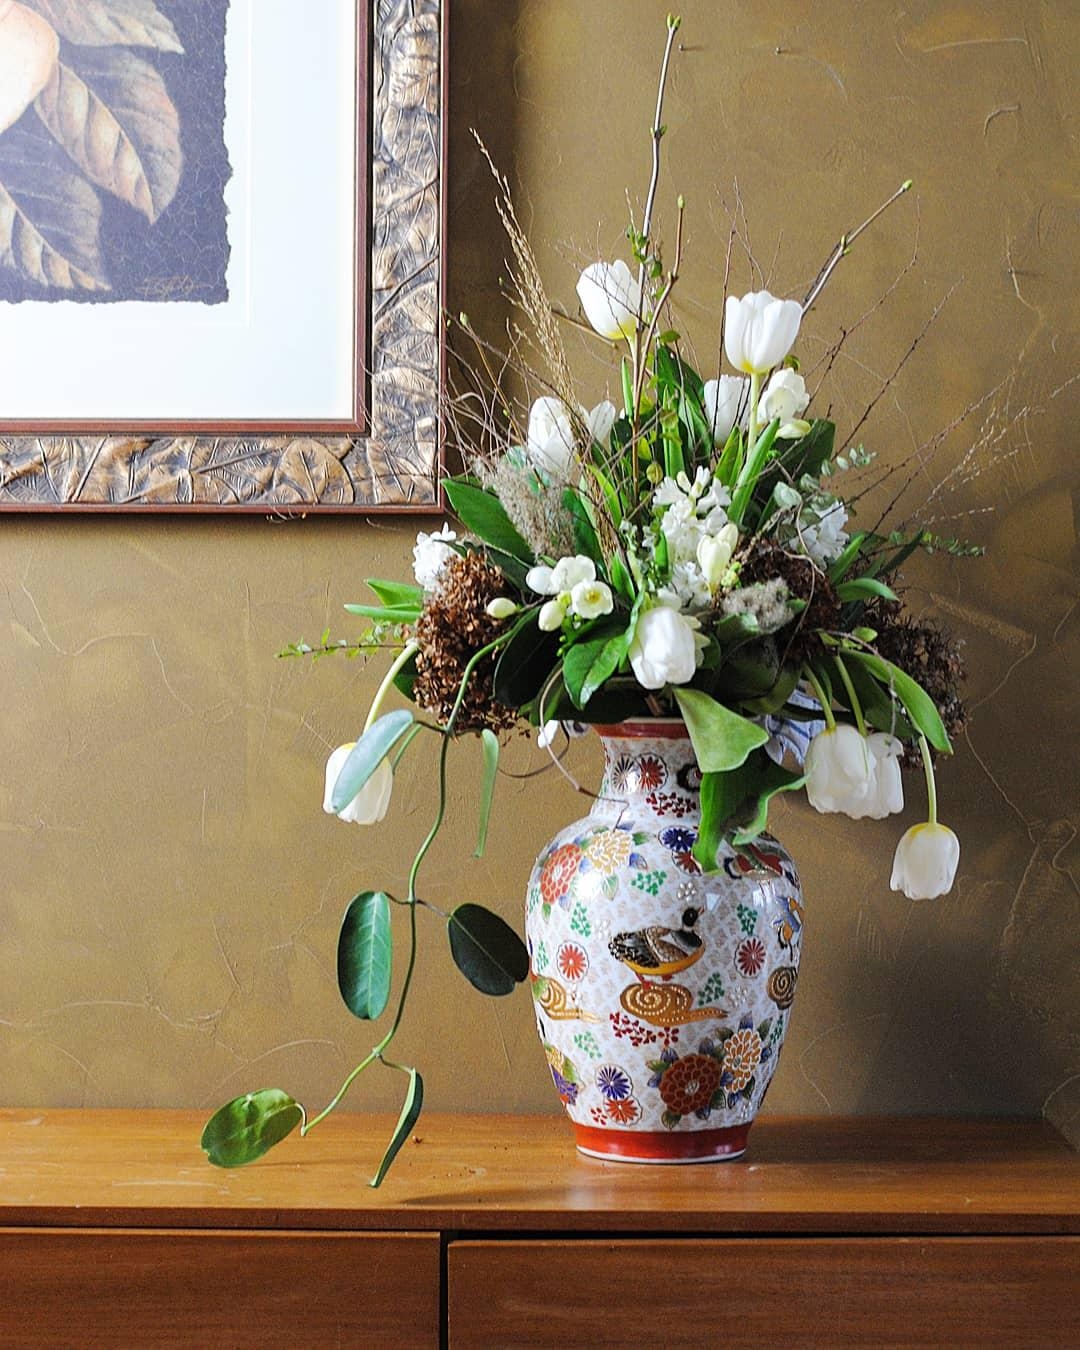 Frische Blumen fürs Wochenende!
#vintage #flowers #midcentury #tulpen #interior #couchliebt 